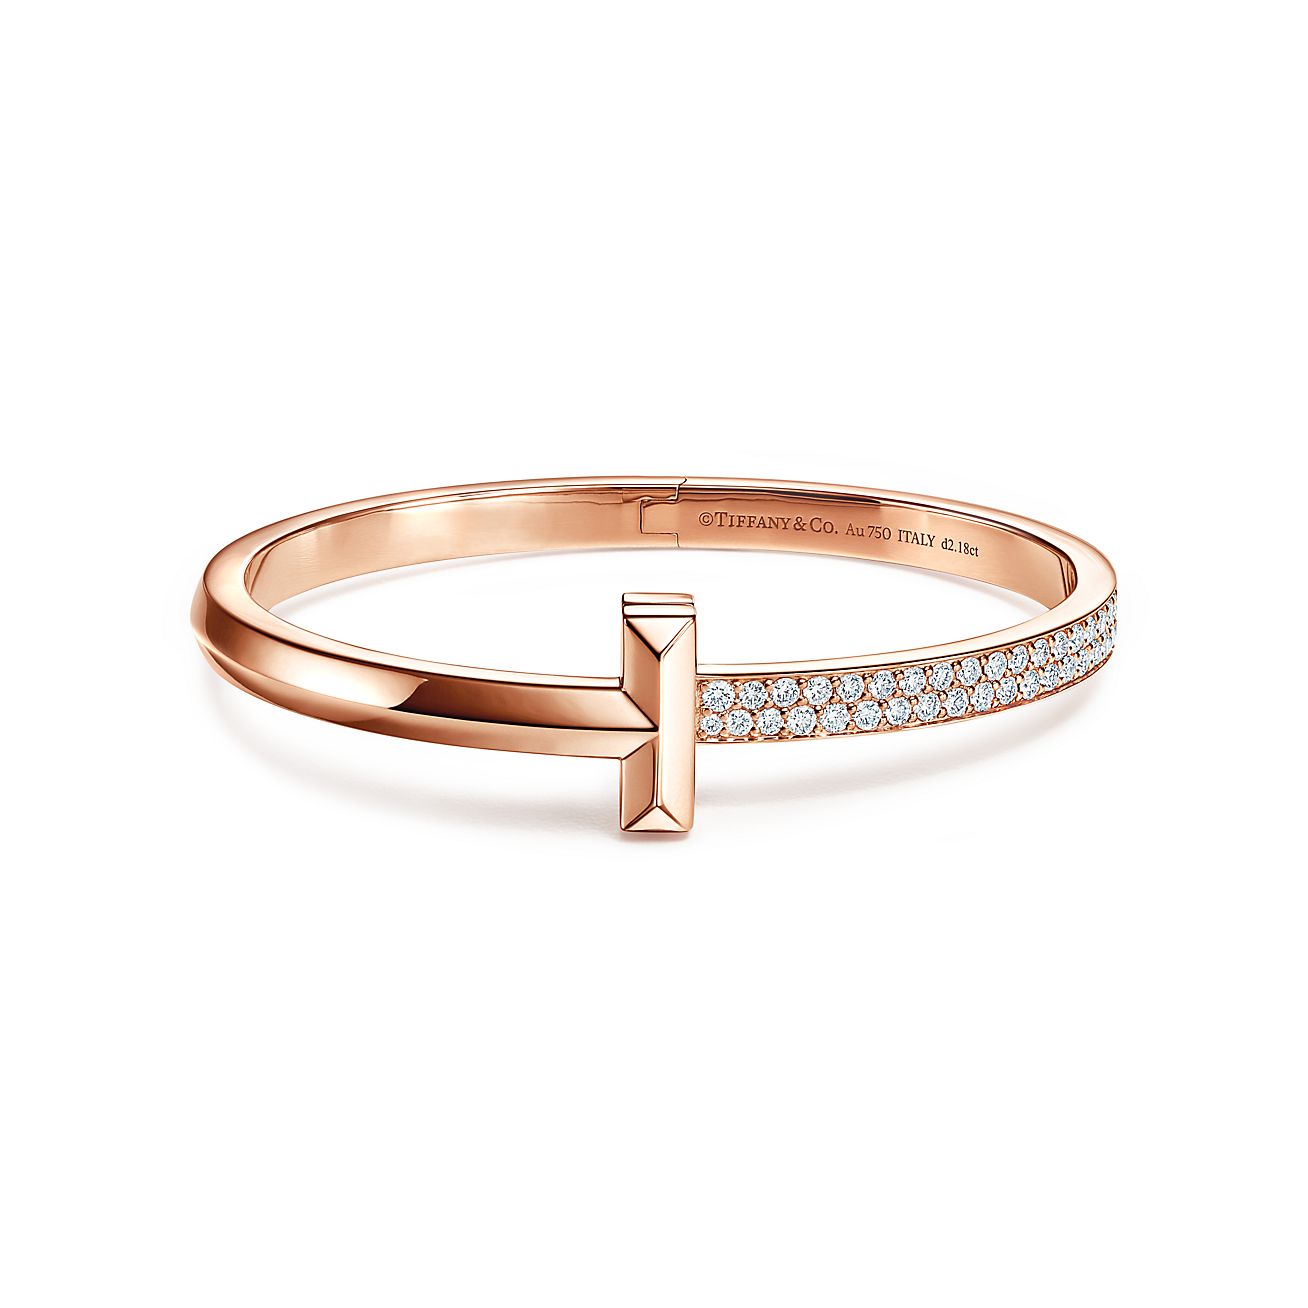 Designer Platinum Couple Rings with Diamonds JL PT 452